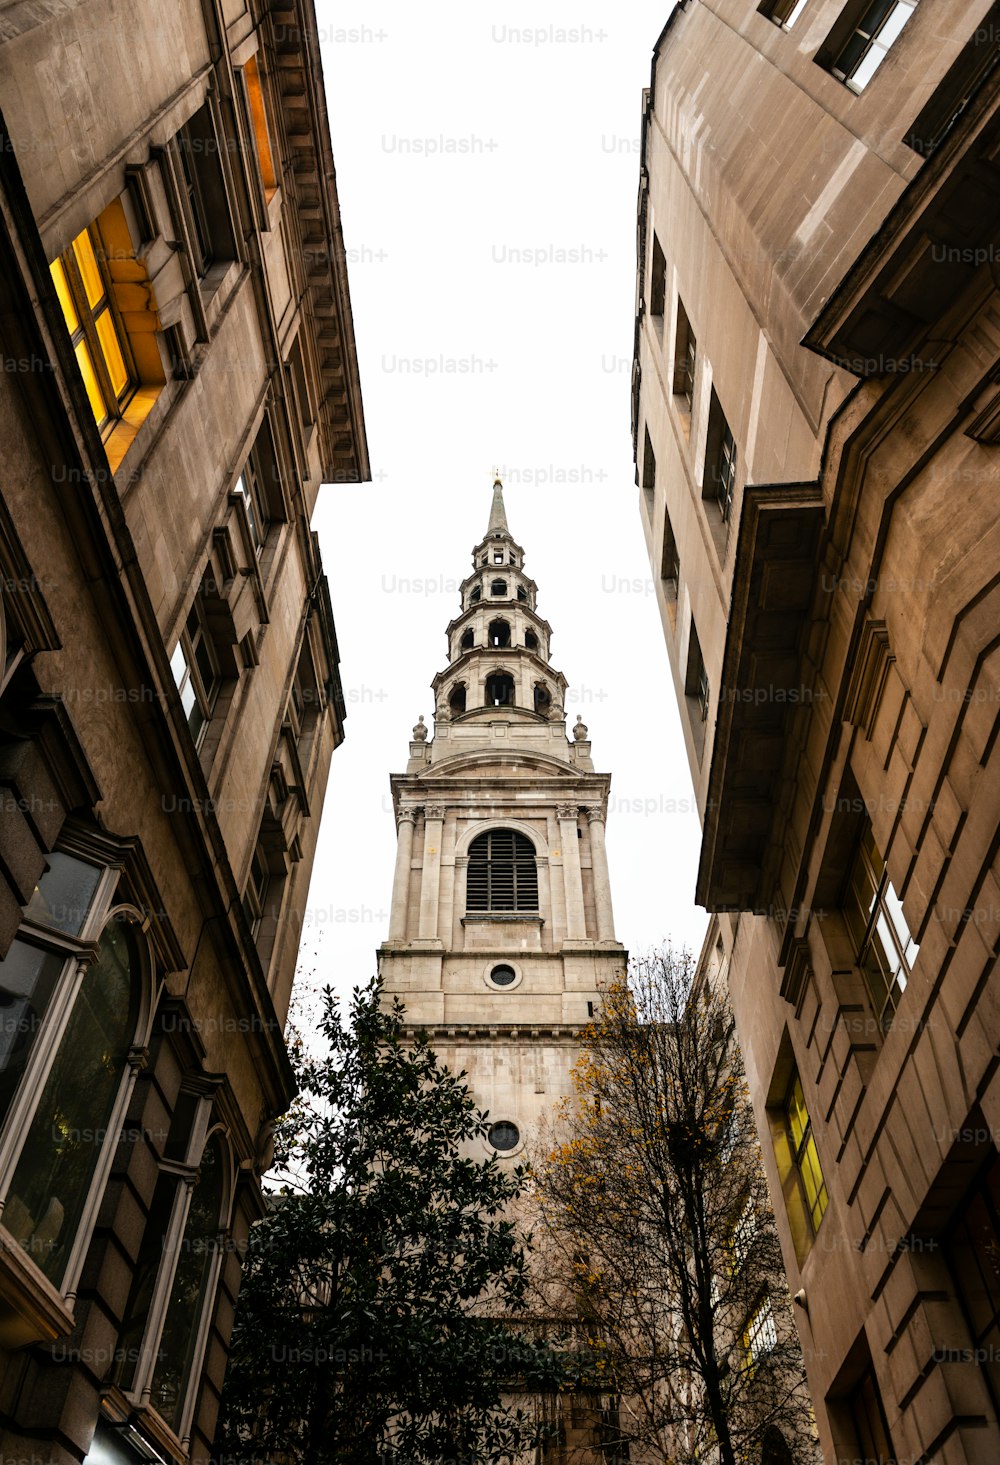 Tower of St Bride's Church, eine der ältesten Kirchen Londons, durch eine schmale Straße gesehen.